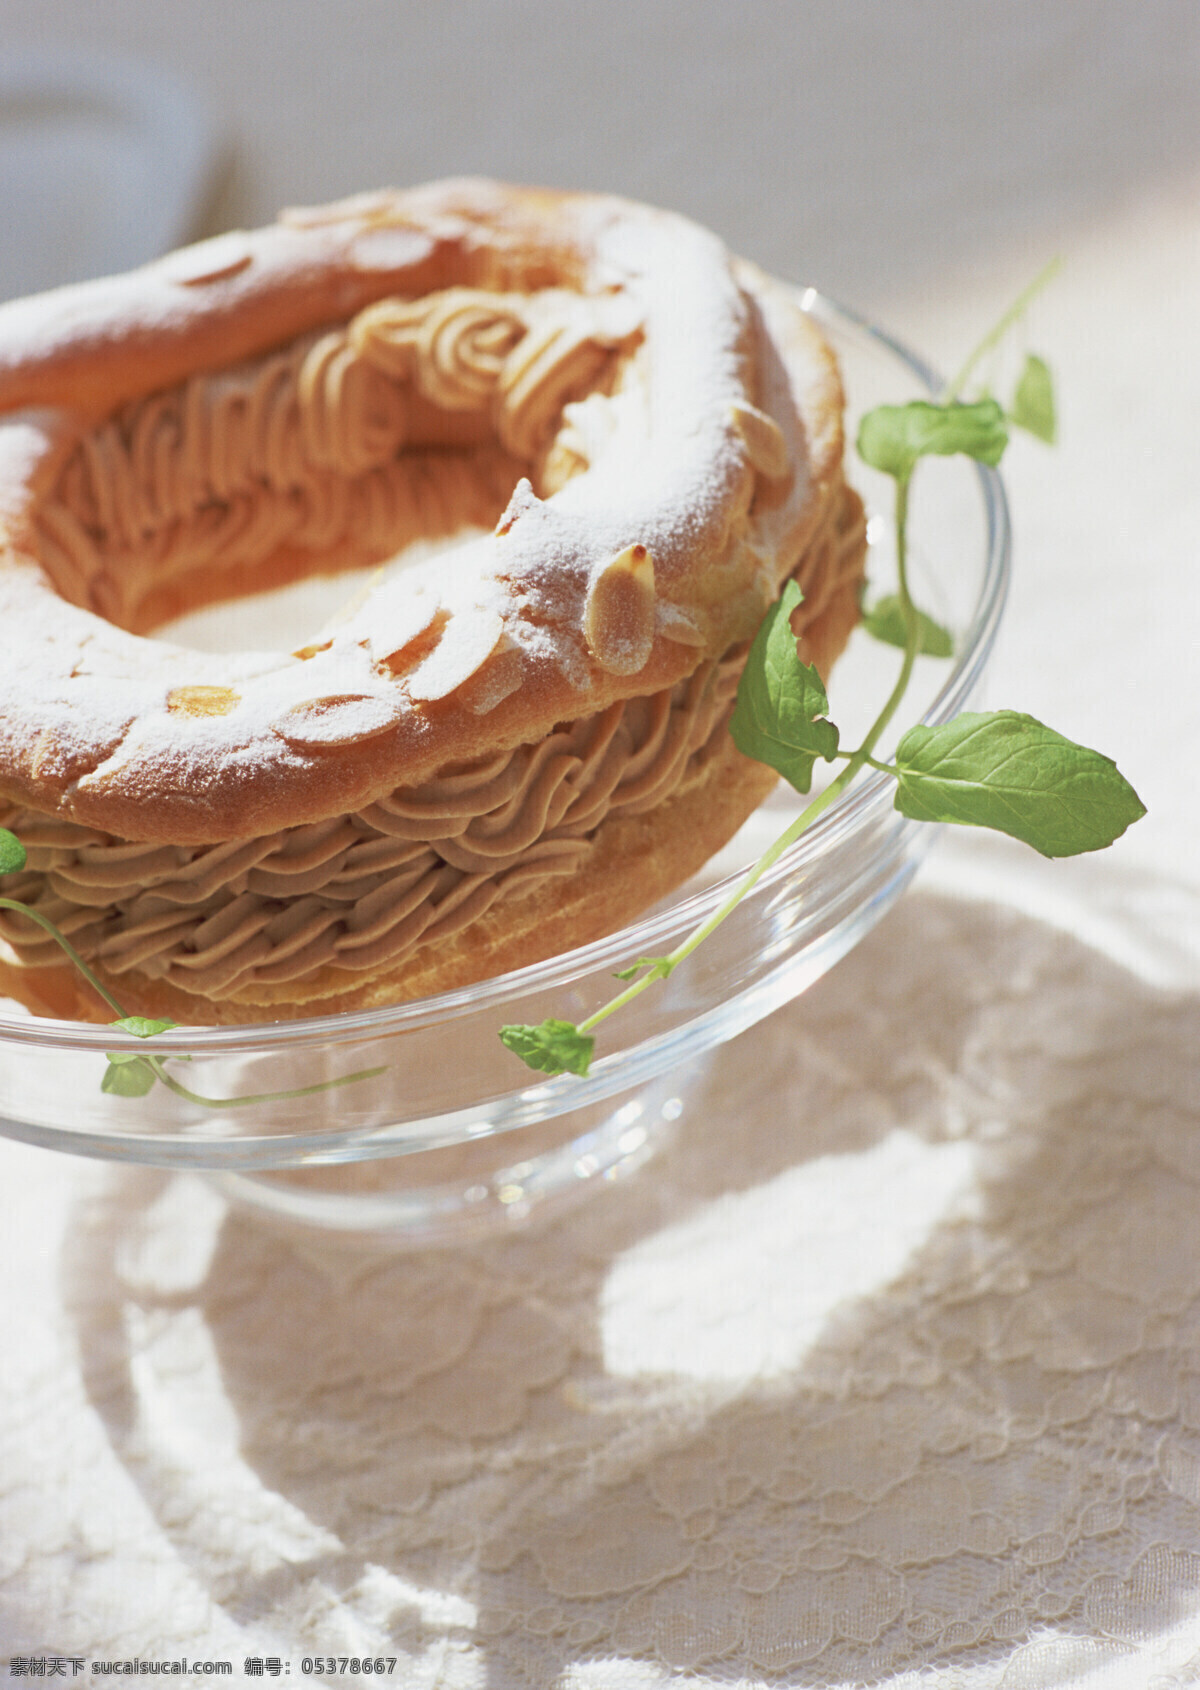 全球 首席 大百科 蛋糕 点心 糕点 美味 面包 水果 甜点 甜品 生物世界